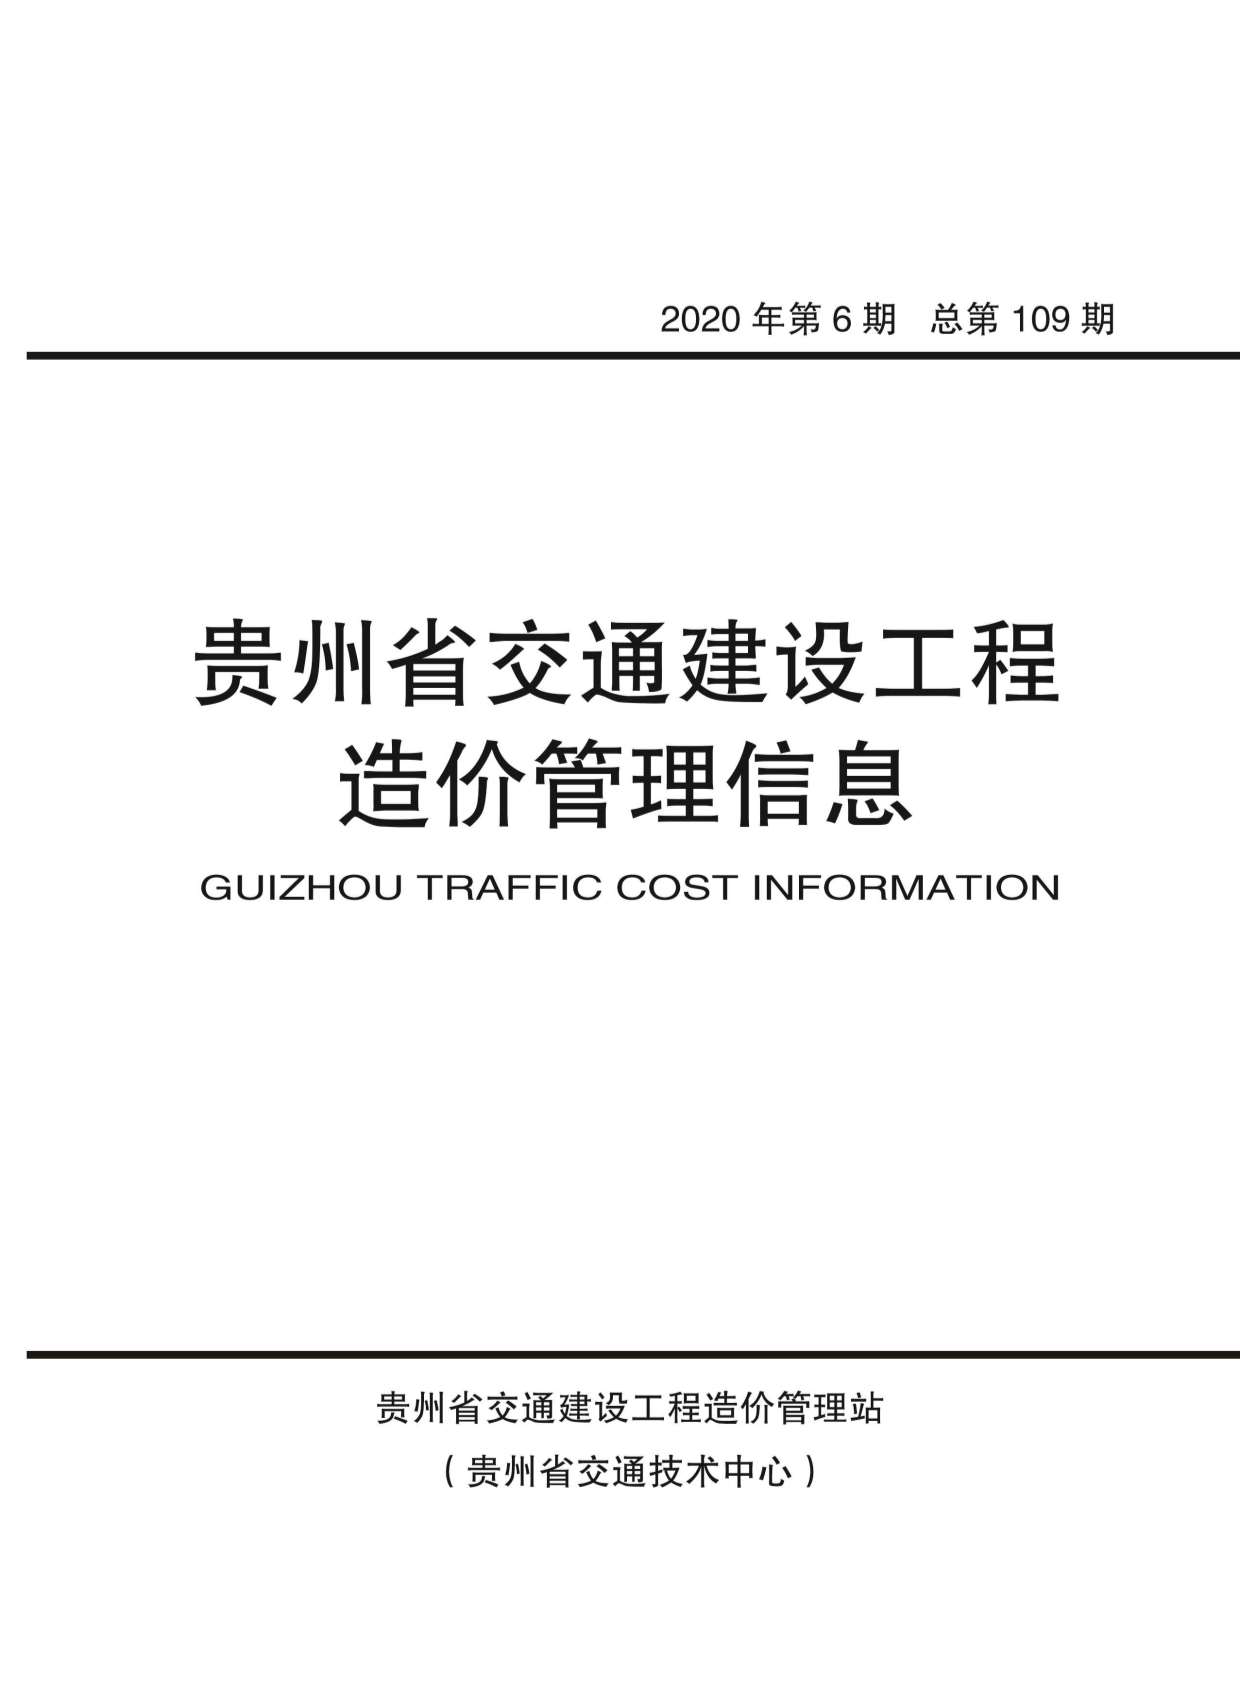 贵州省2020年6月交通建设工程造价管理信息造价库信息价